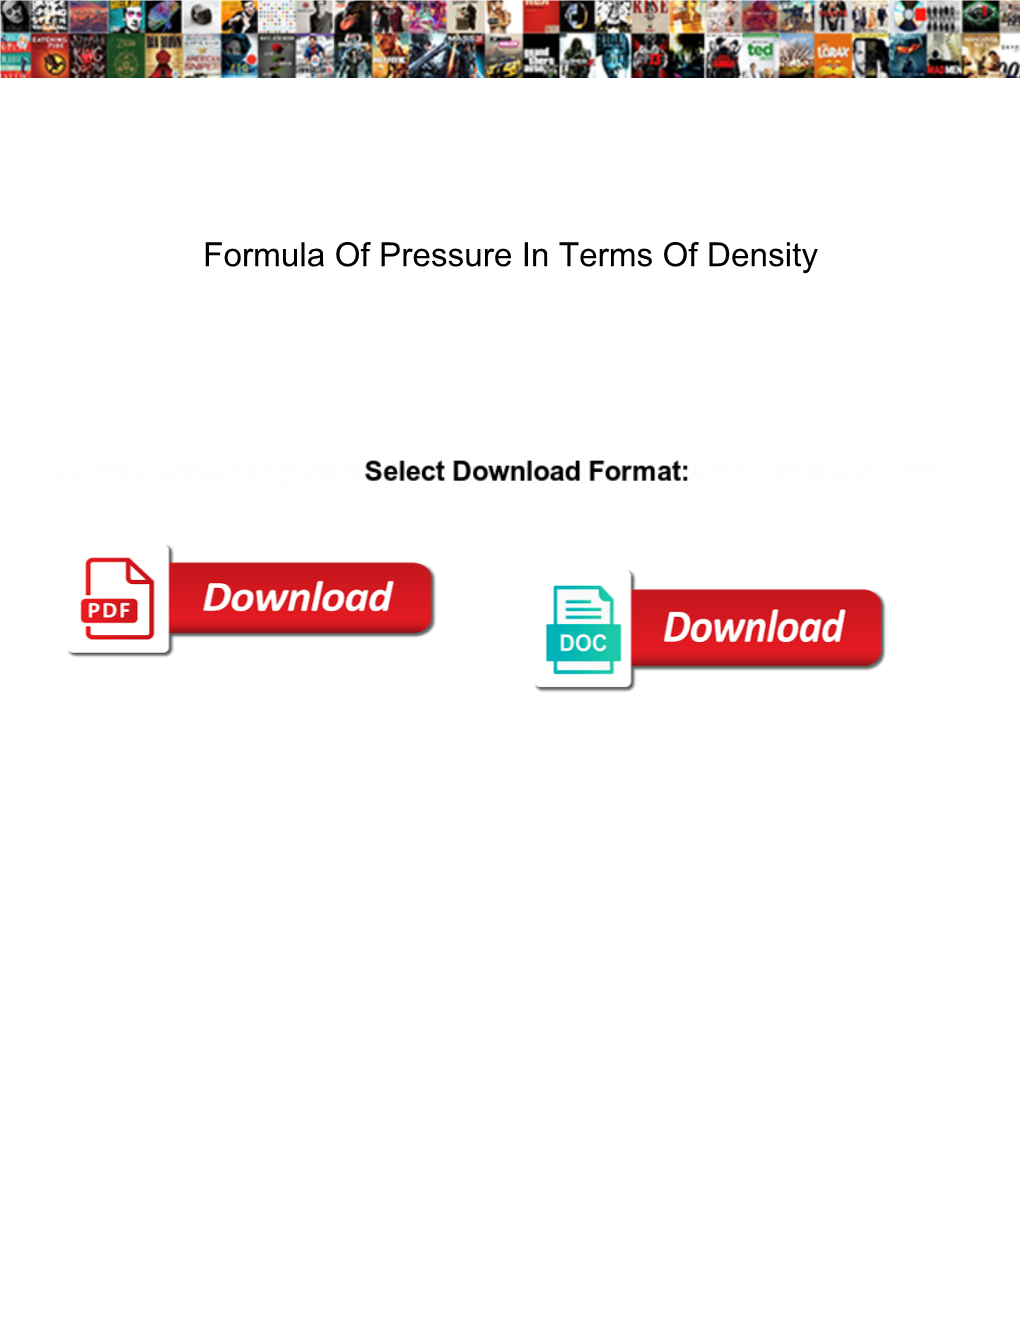 Formula of Pressure in Terms of Density